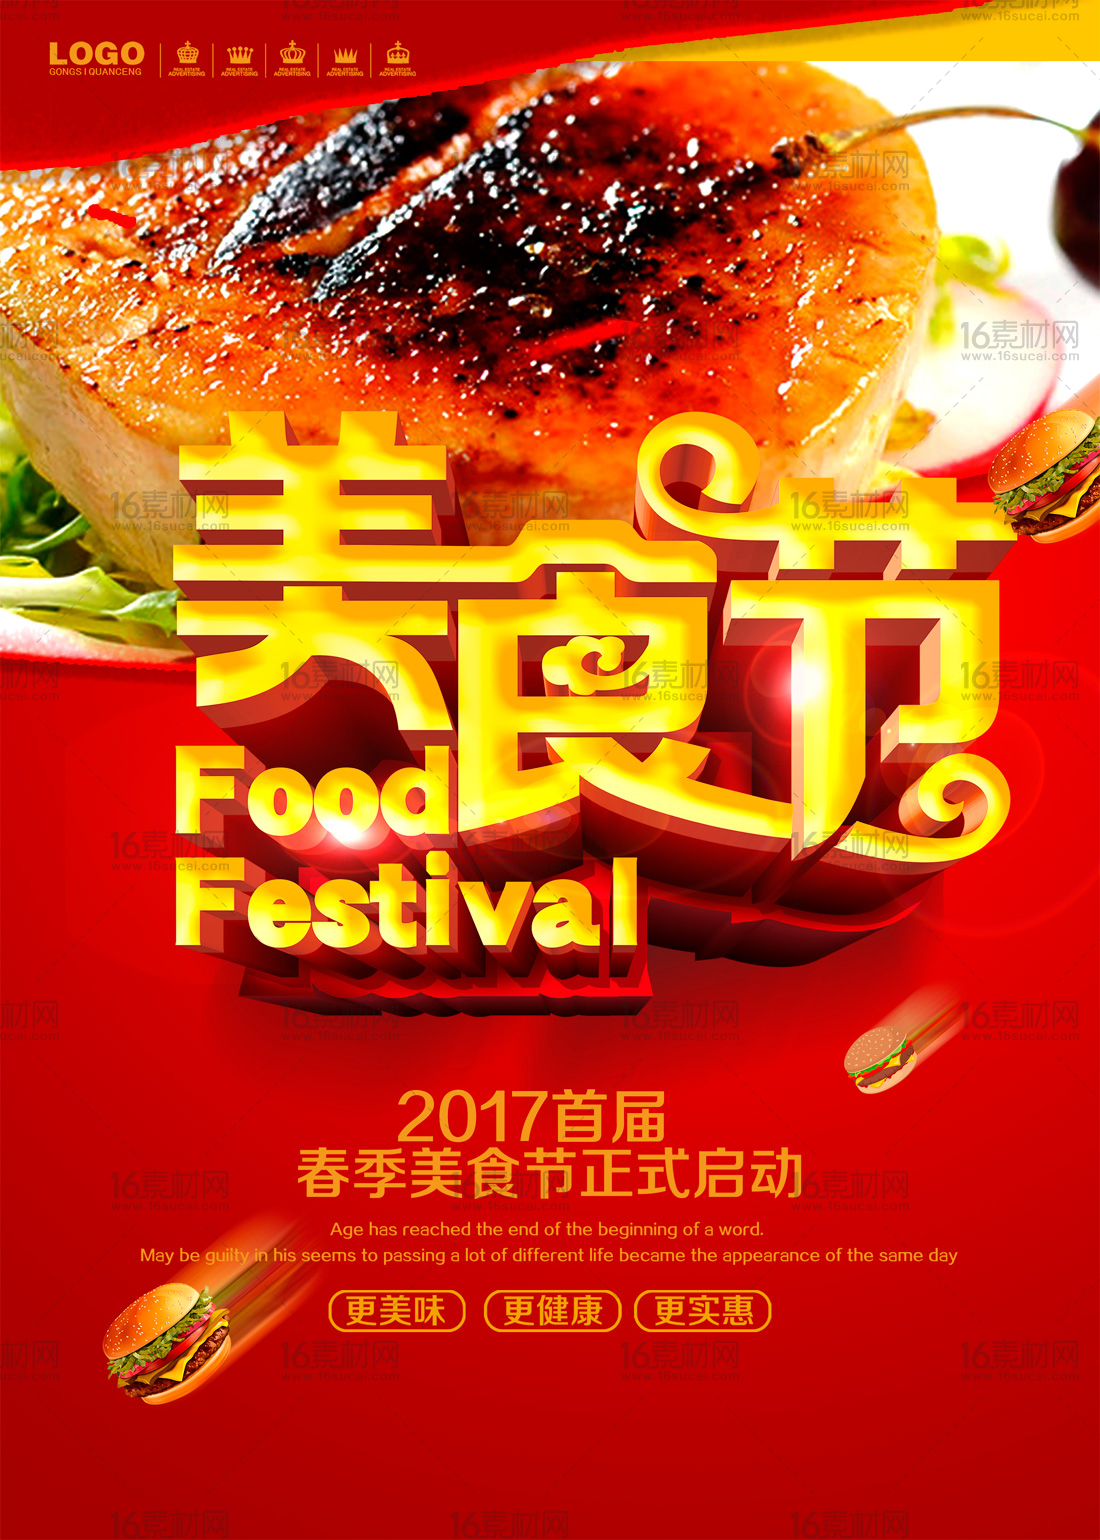 2017首届春季美食节启动宣传海报psd分层素材